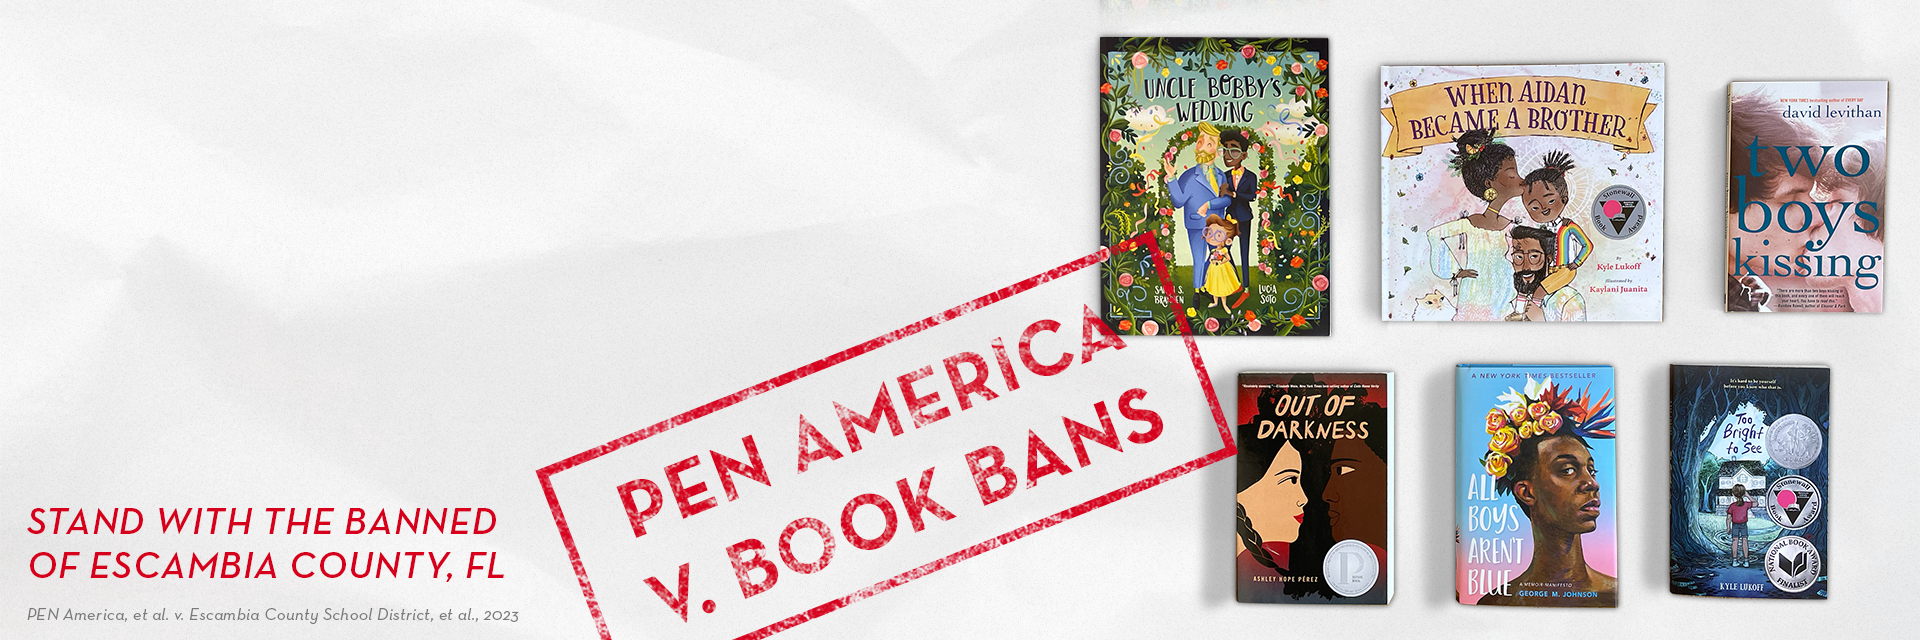 PEN America v. Book Bans